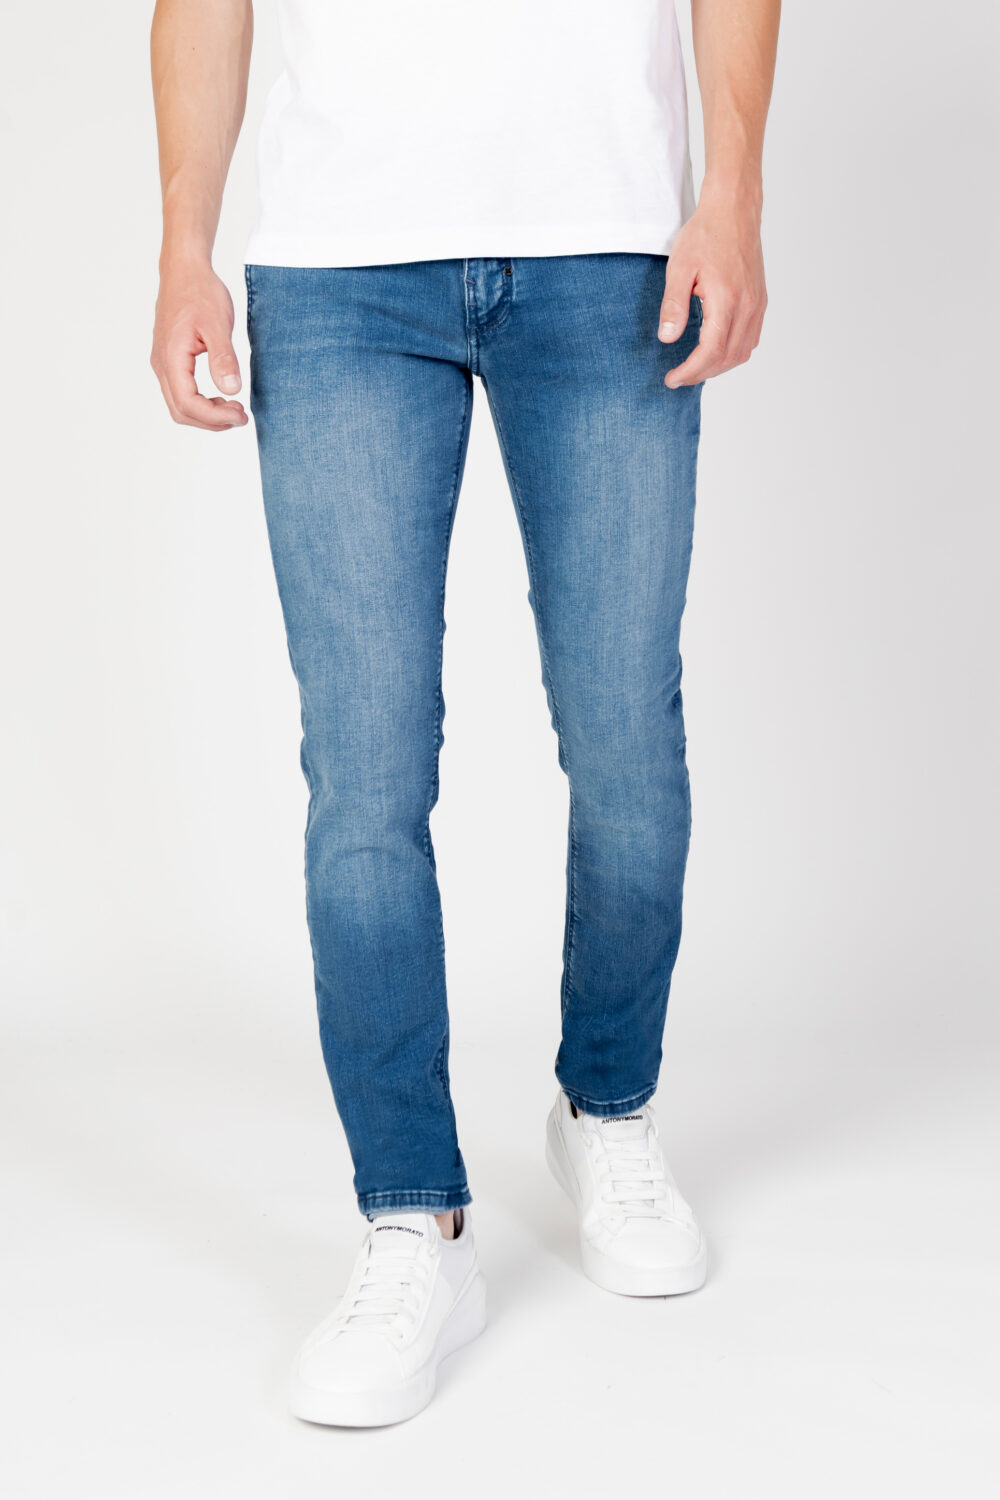 Jeans skinny Antony Morato mason skinny fit in power Denim - Foto 1